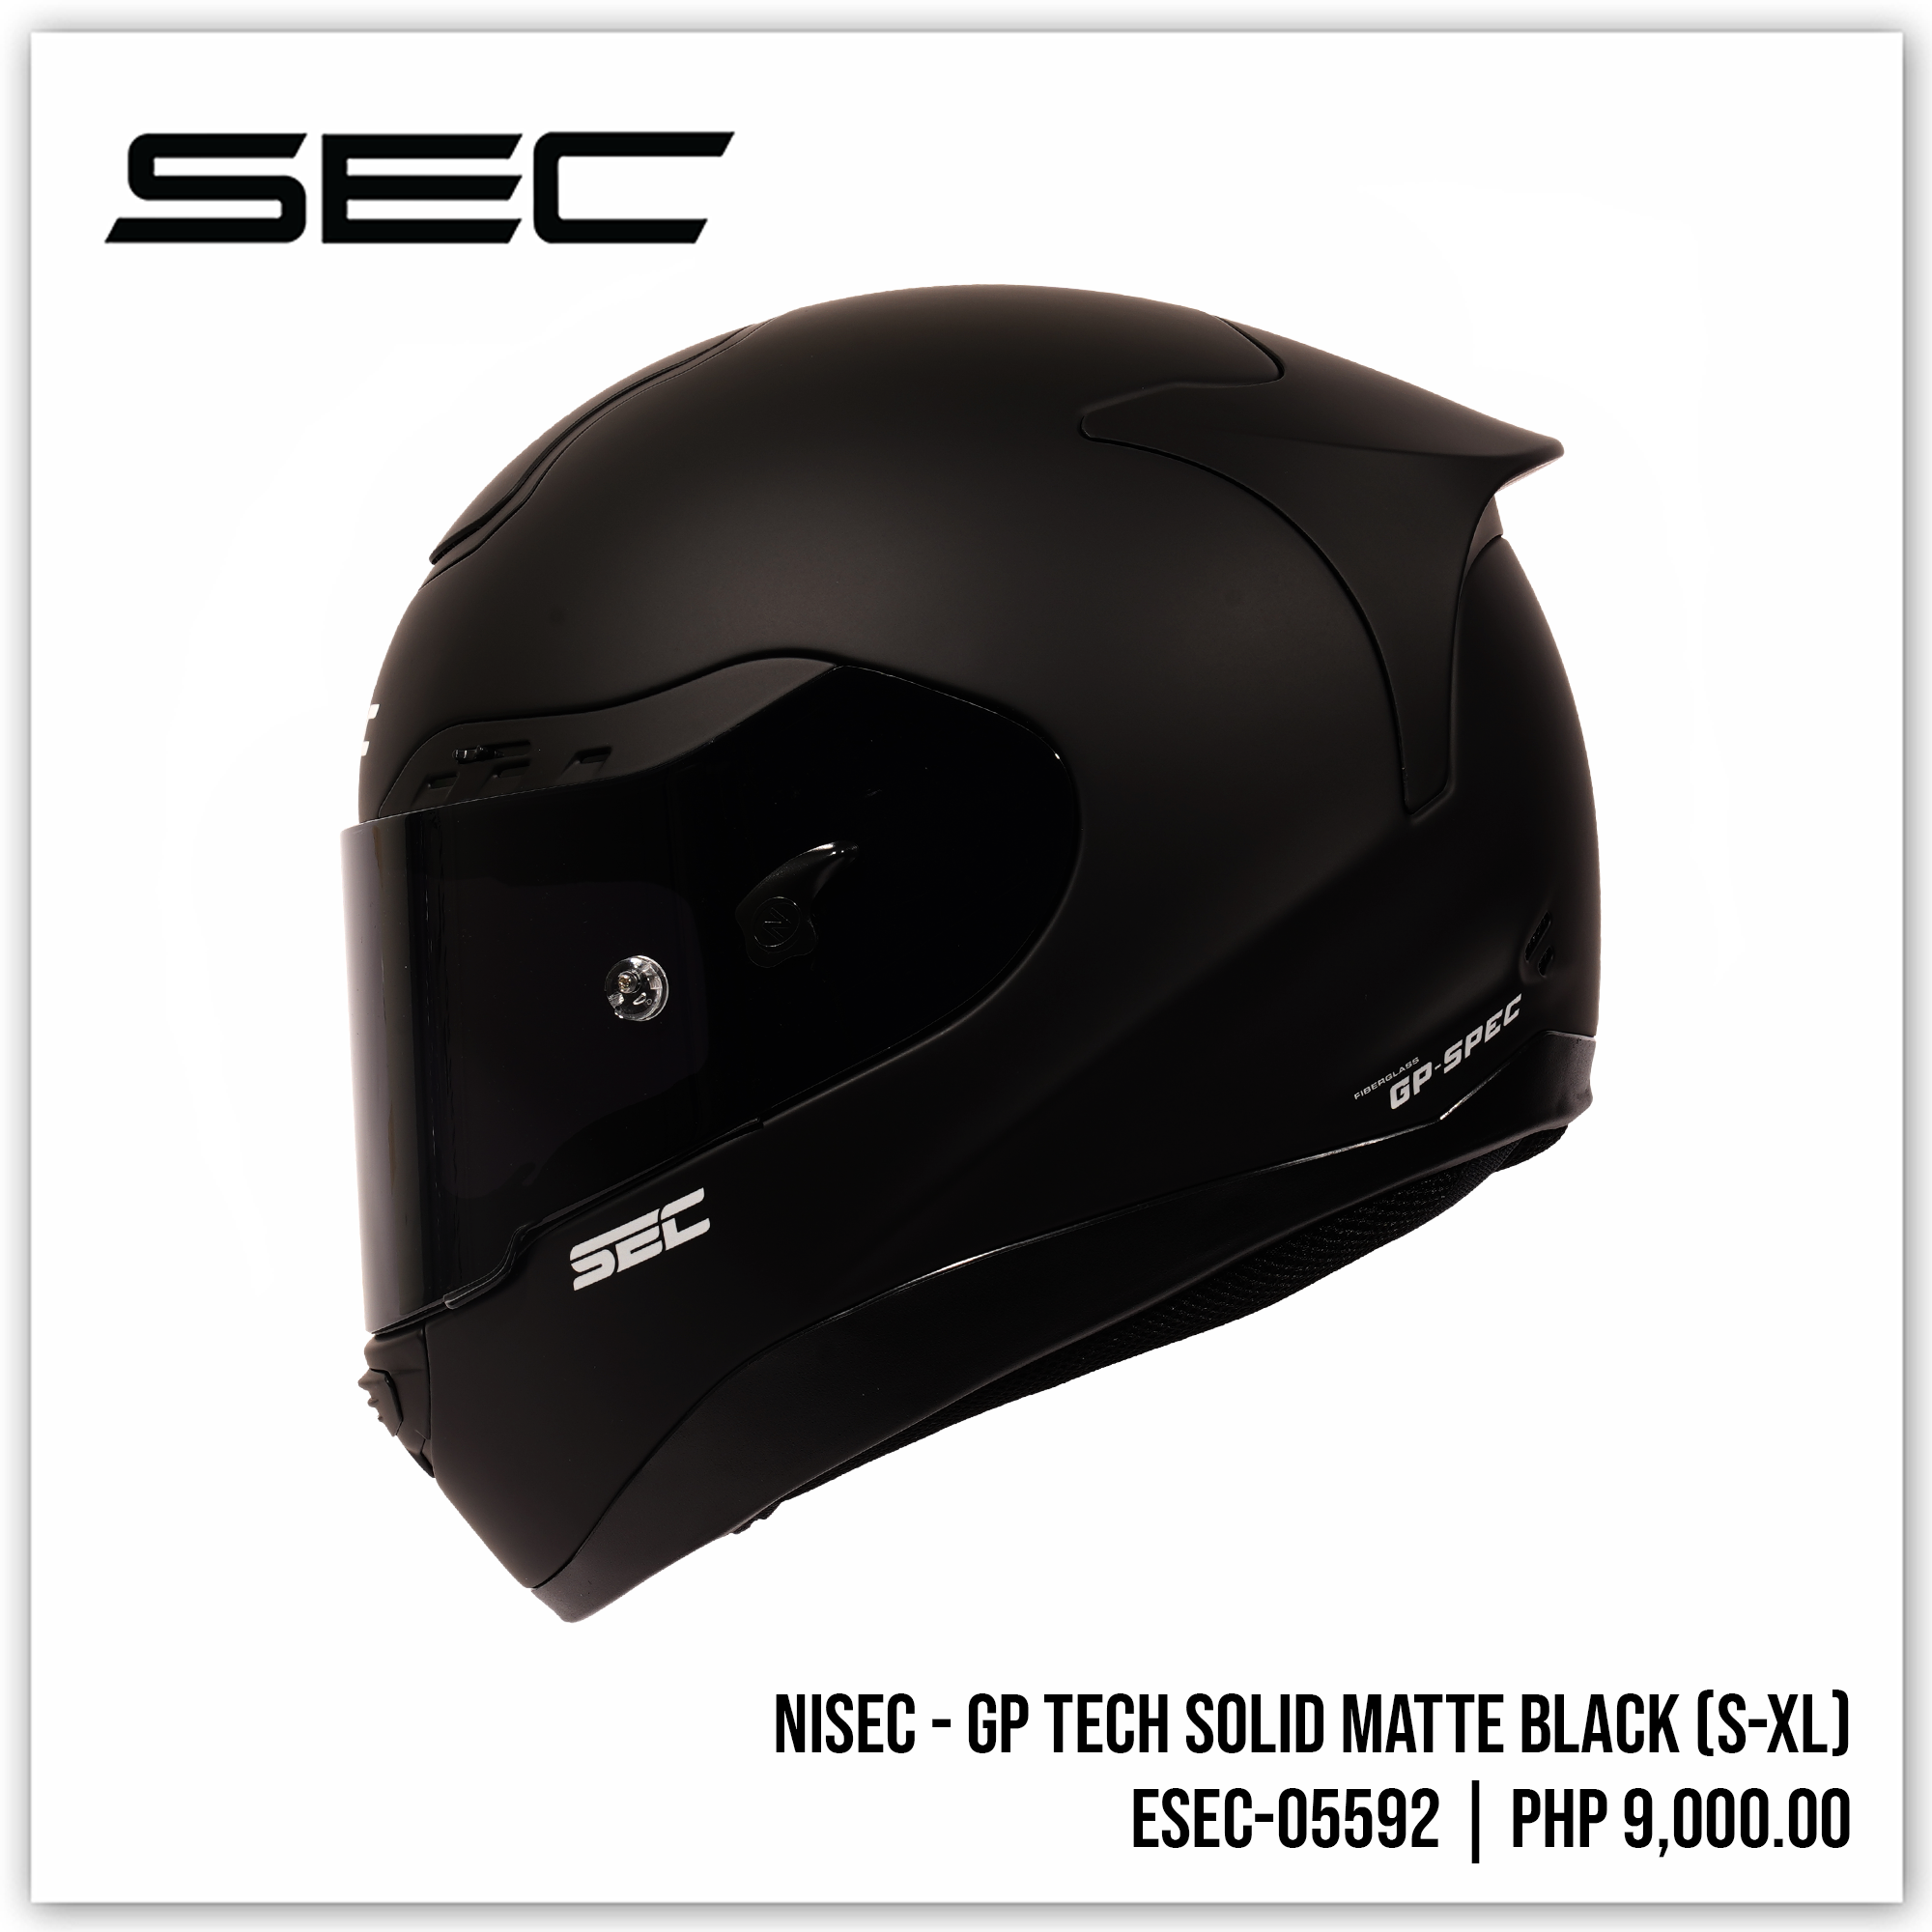 NISEC - GP-TECH Solid Matte Black